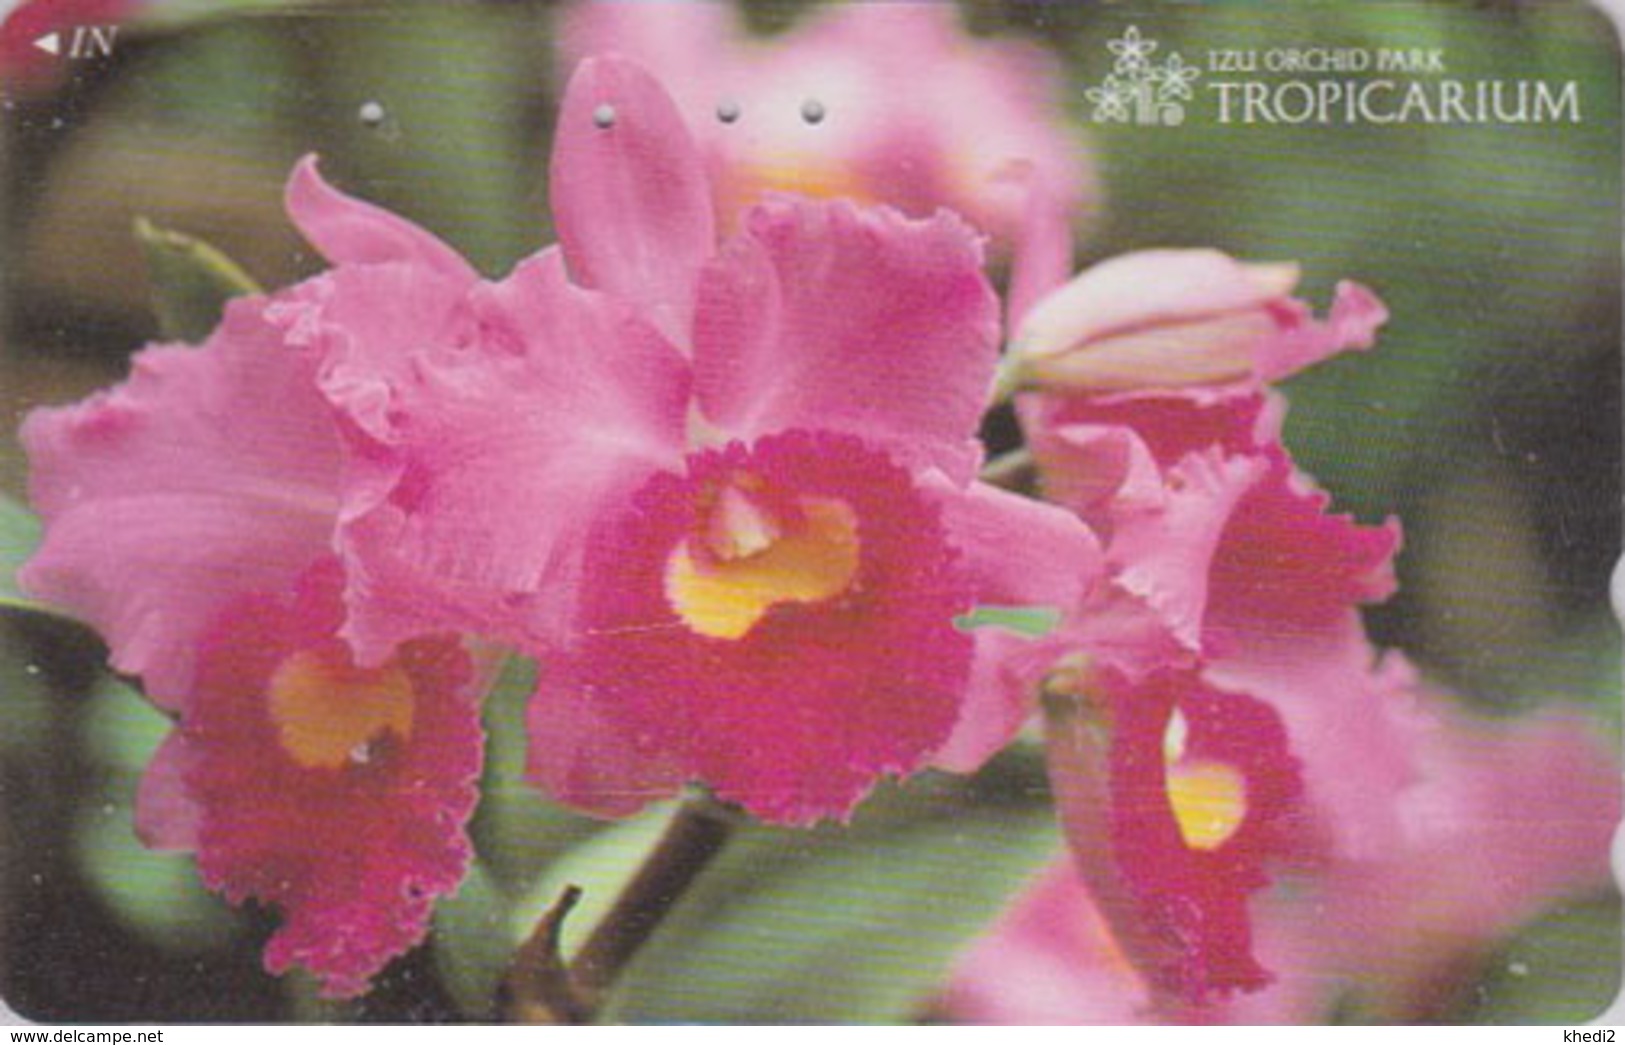 Télécarte Japon / 110-011 - FLEUR -  ORCHIDEE **  Série TROPICARIUM  IZU ORCHID PARK ** - FLOWER Japan Phonecard - 2436 - Fleurs